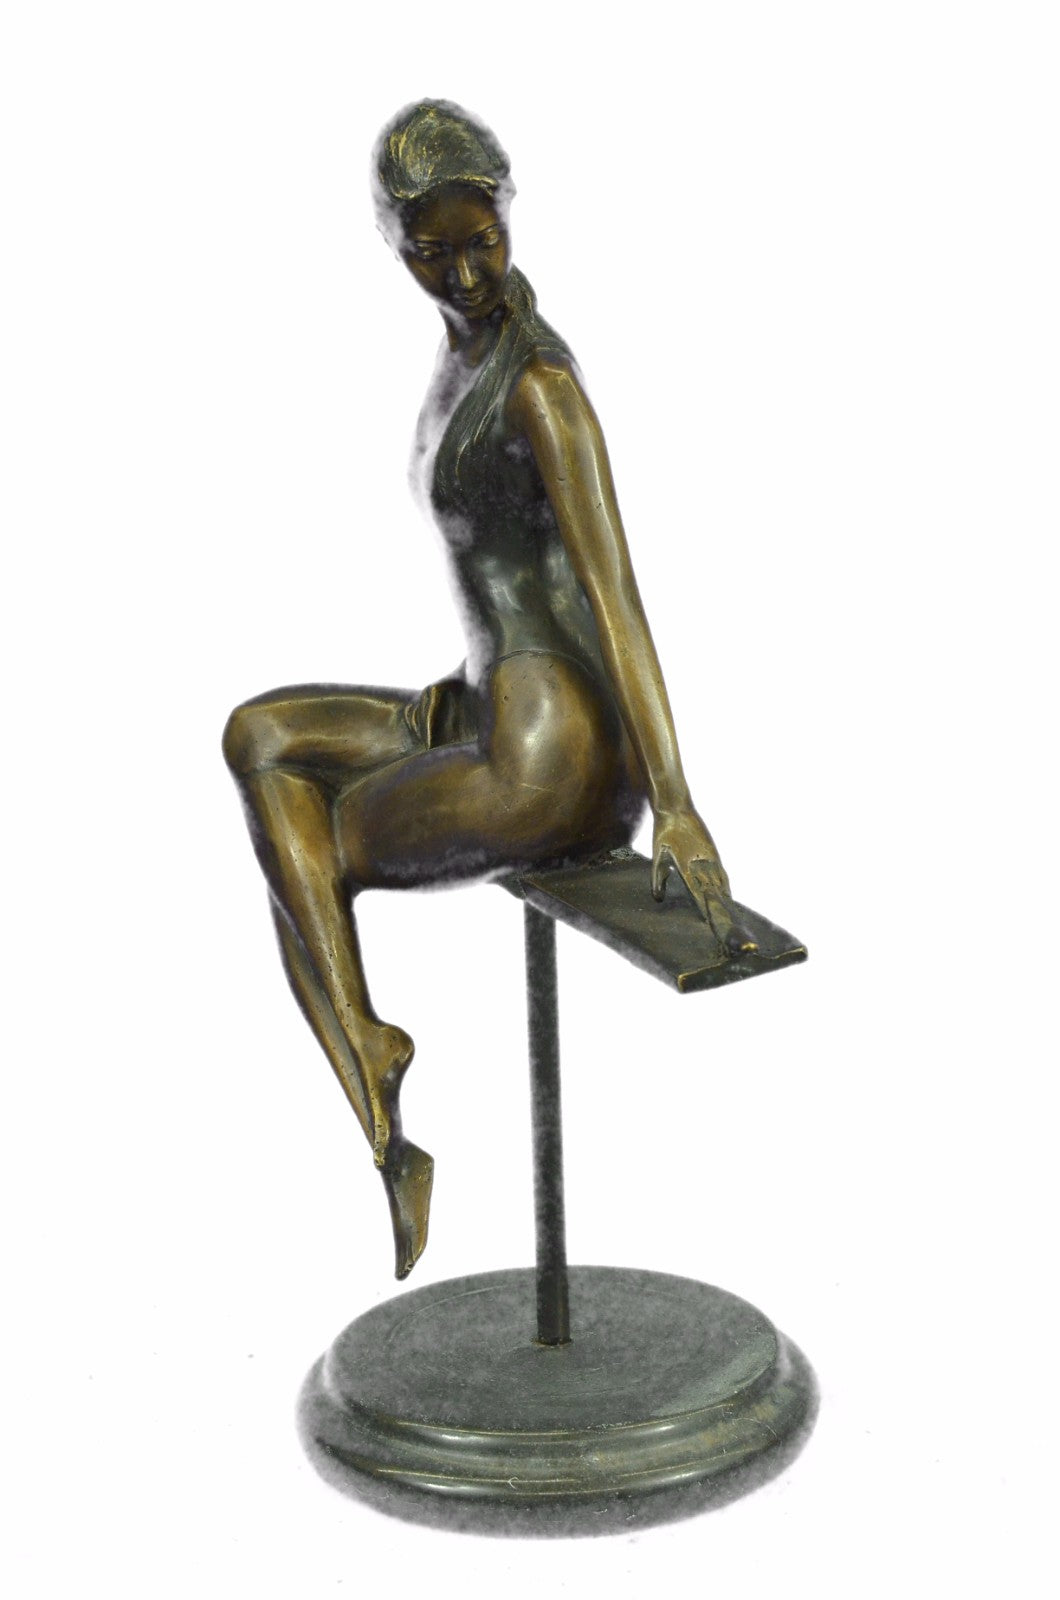 Hot Cast Semi Nude Female Woman Lady With Bird Bronze Sculpture Statue Figurine